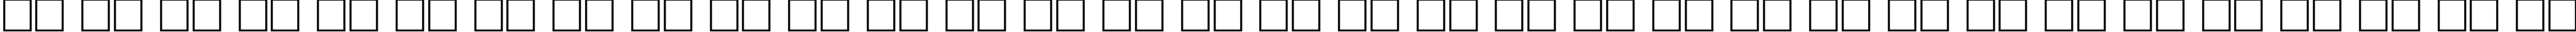 Пример написания русского алфавита шрифтом FreeSet95b